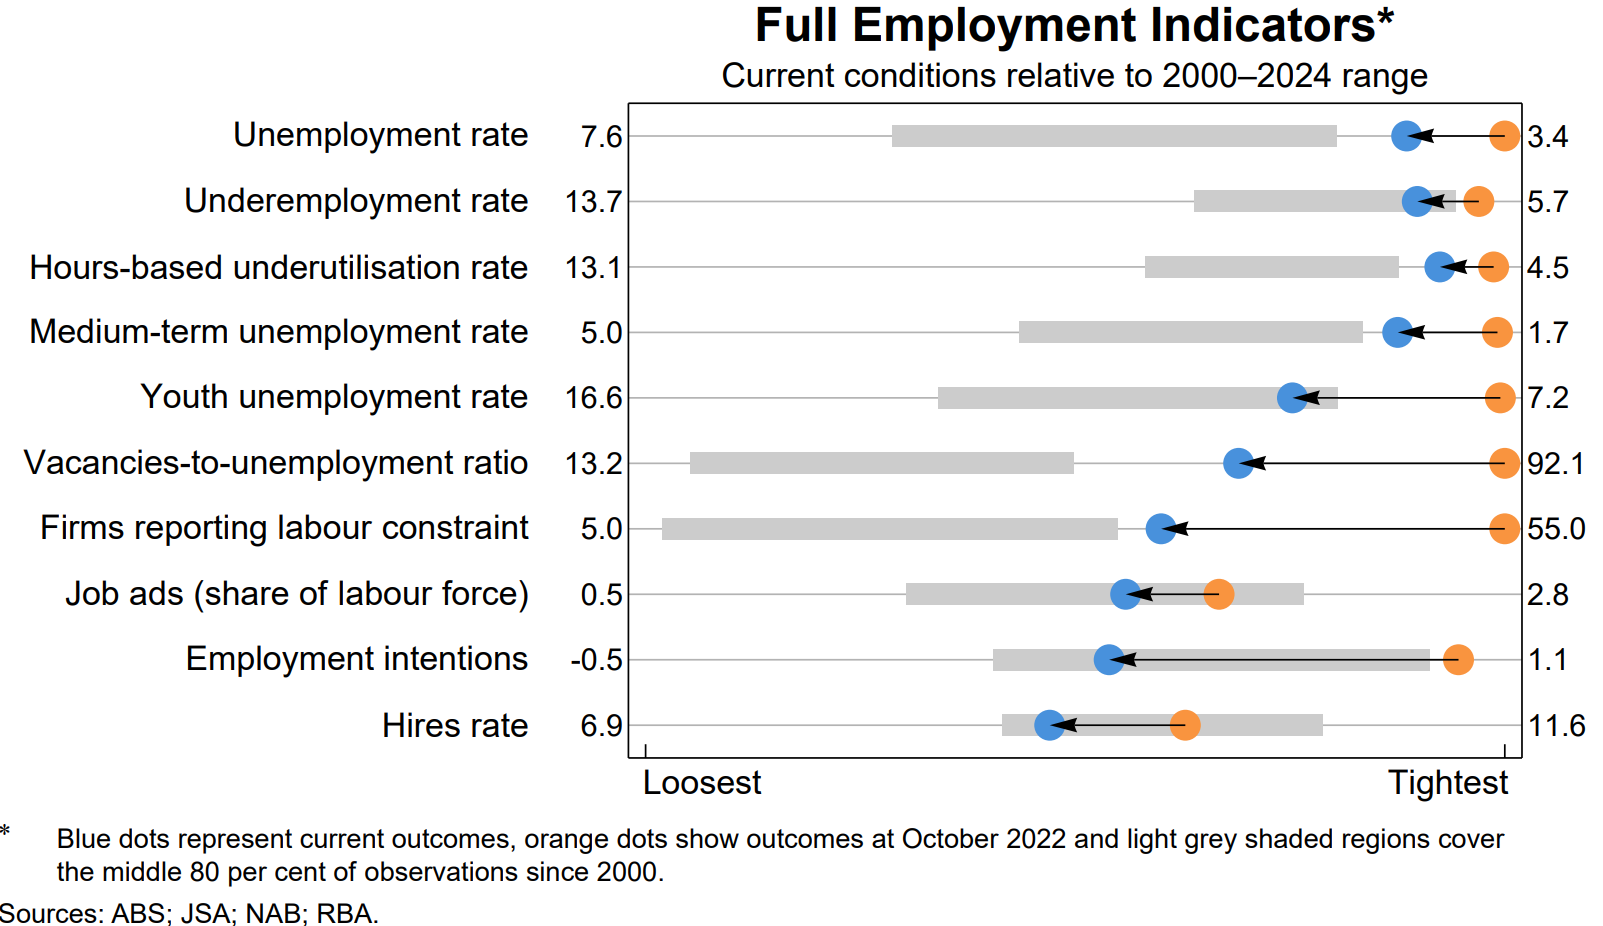 RBA employment indicators